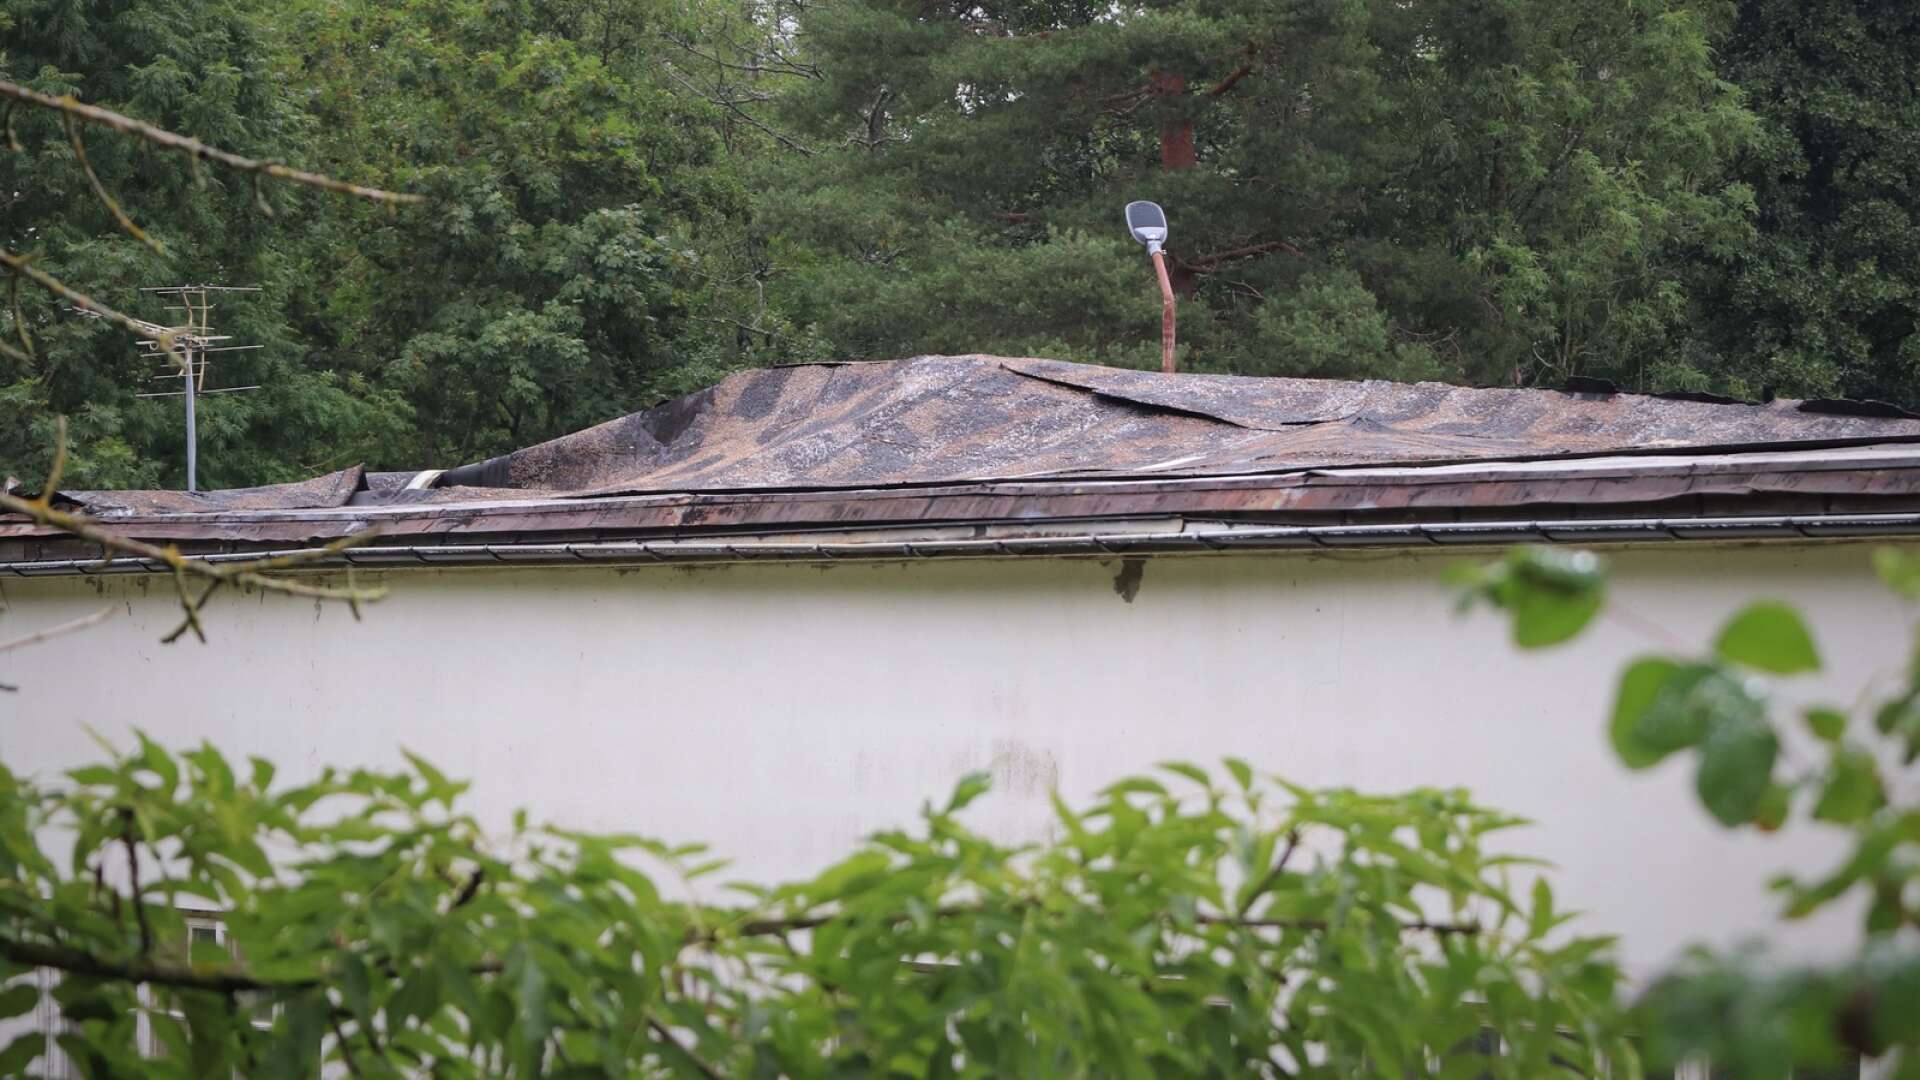 Taket fläktes ihop och gled åt sidan i samband med stormen. 